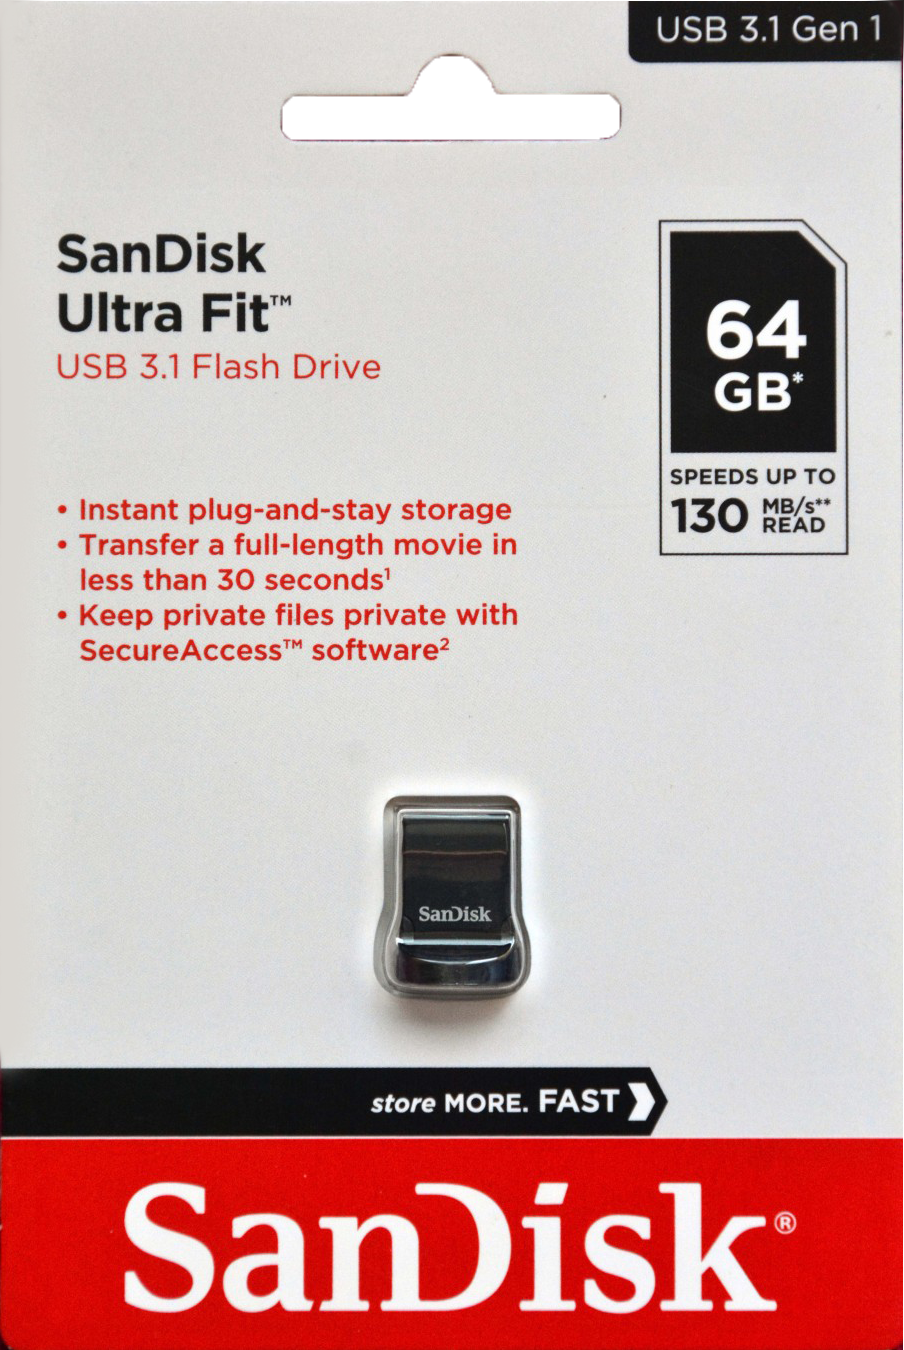 USB 3.1 SanDisk CZ430 64GB Ultra Fit Mini chính hãng - Speed up to 130MB/s [BH 2 năm]